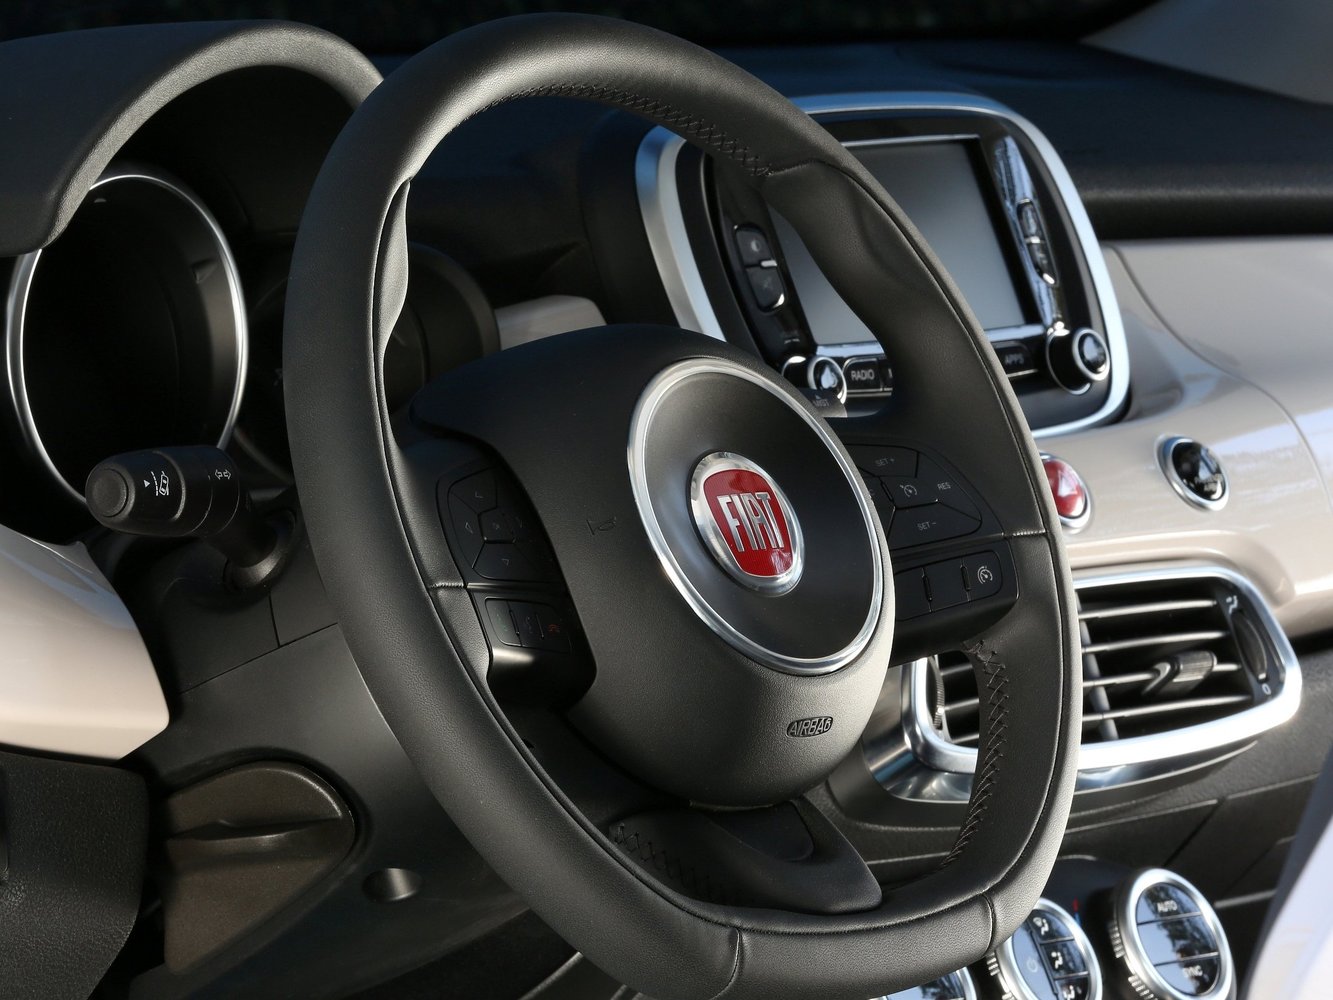 кроссовер Fiat 500X 2014 - 2016г выпуска модификация 1.6 MT (120 л.с.)